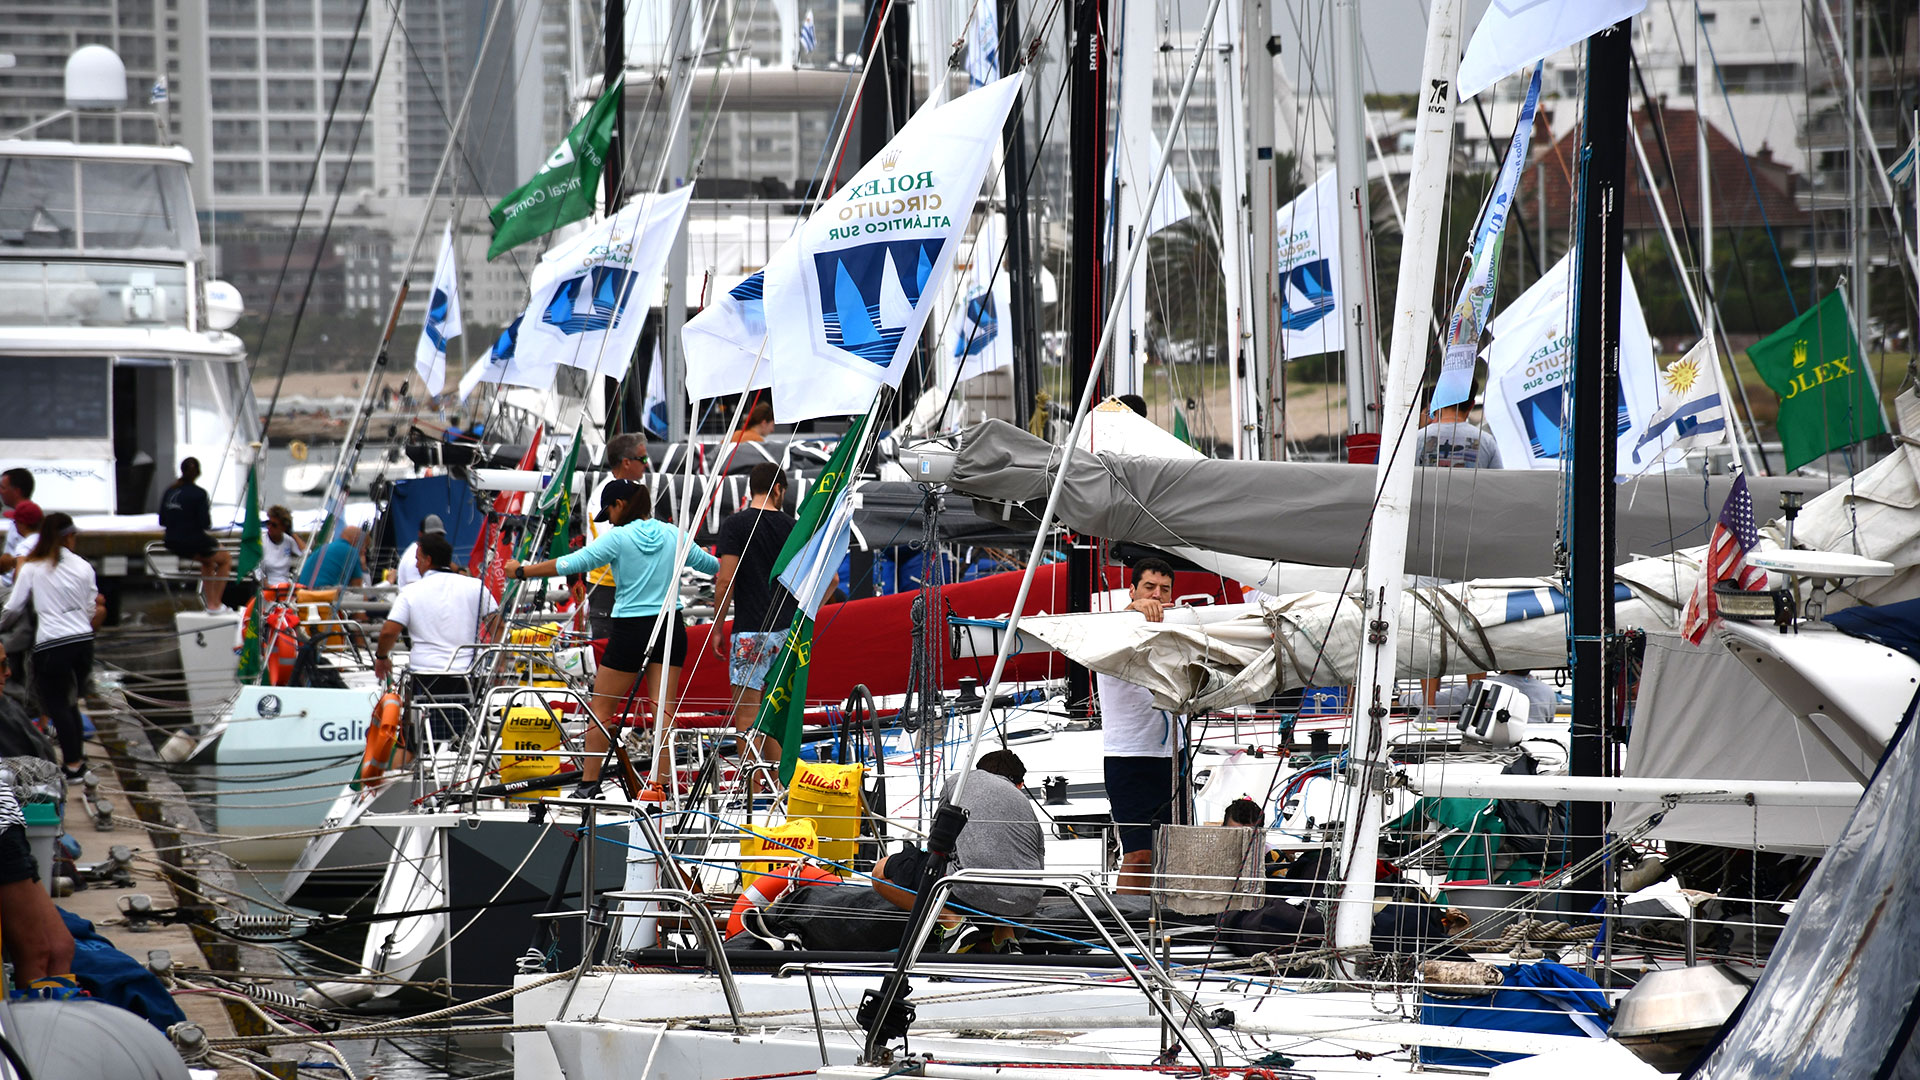 Los veleros participantes de la copa "Rolex" fueron eximidos de las restricciones sanitarias impuestas al resto de los navegantes, sin razones sanitarias que lo ameriten